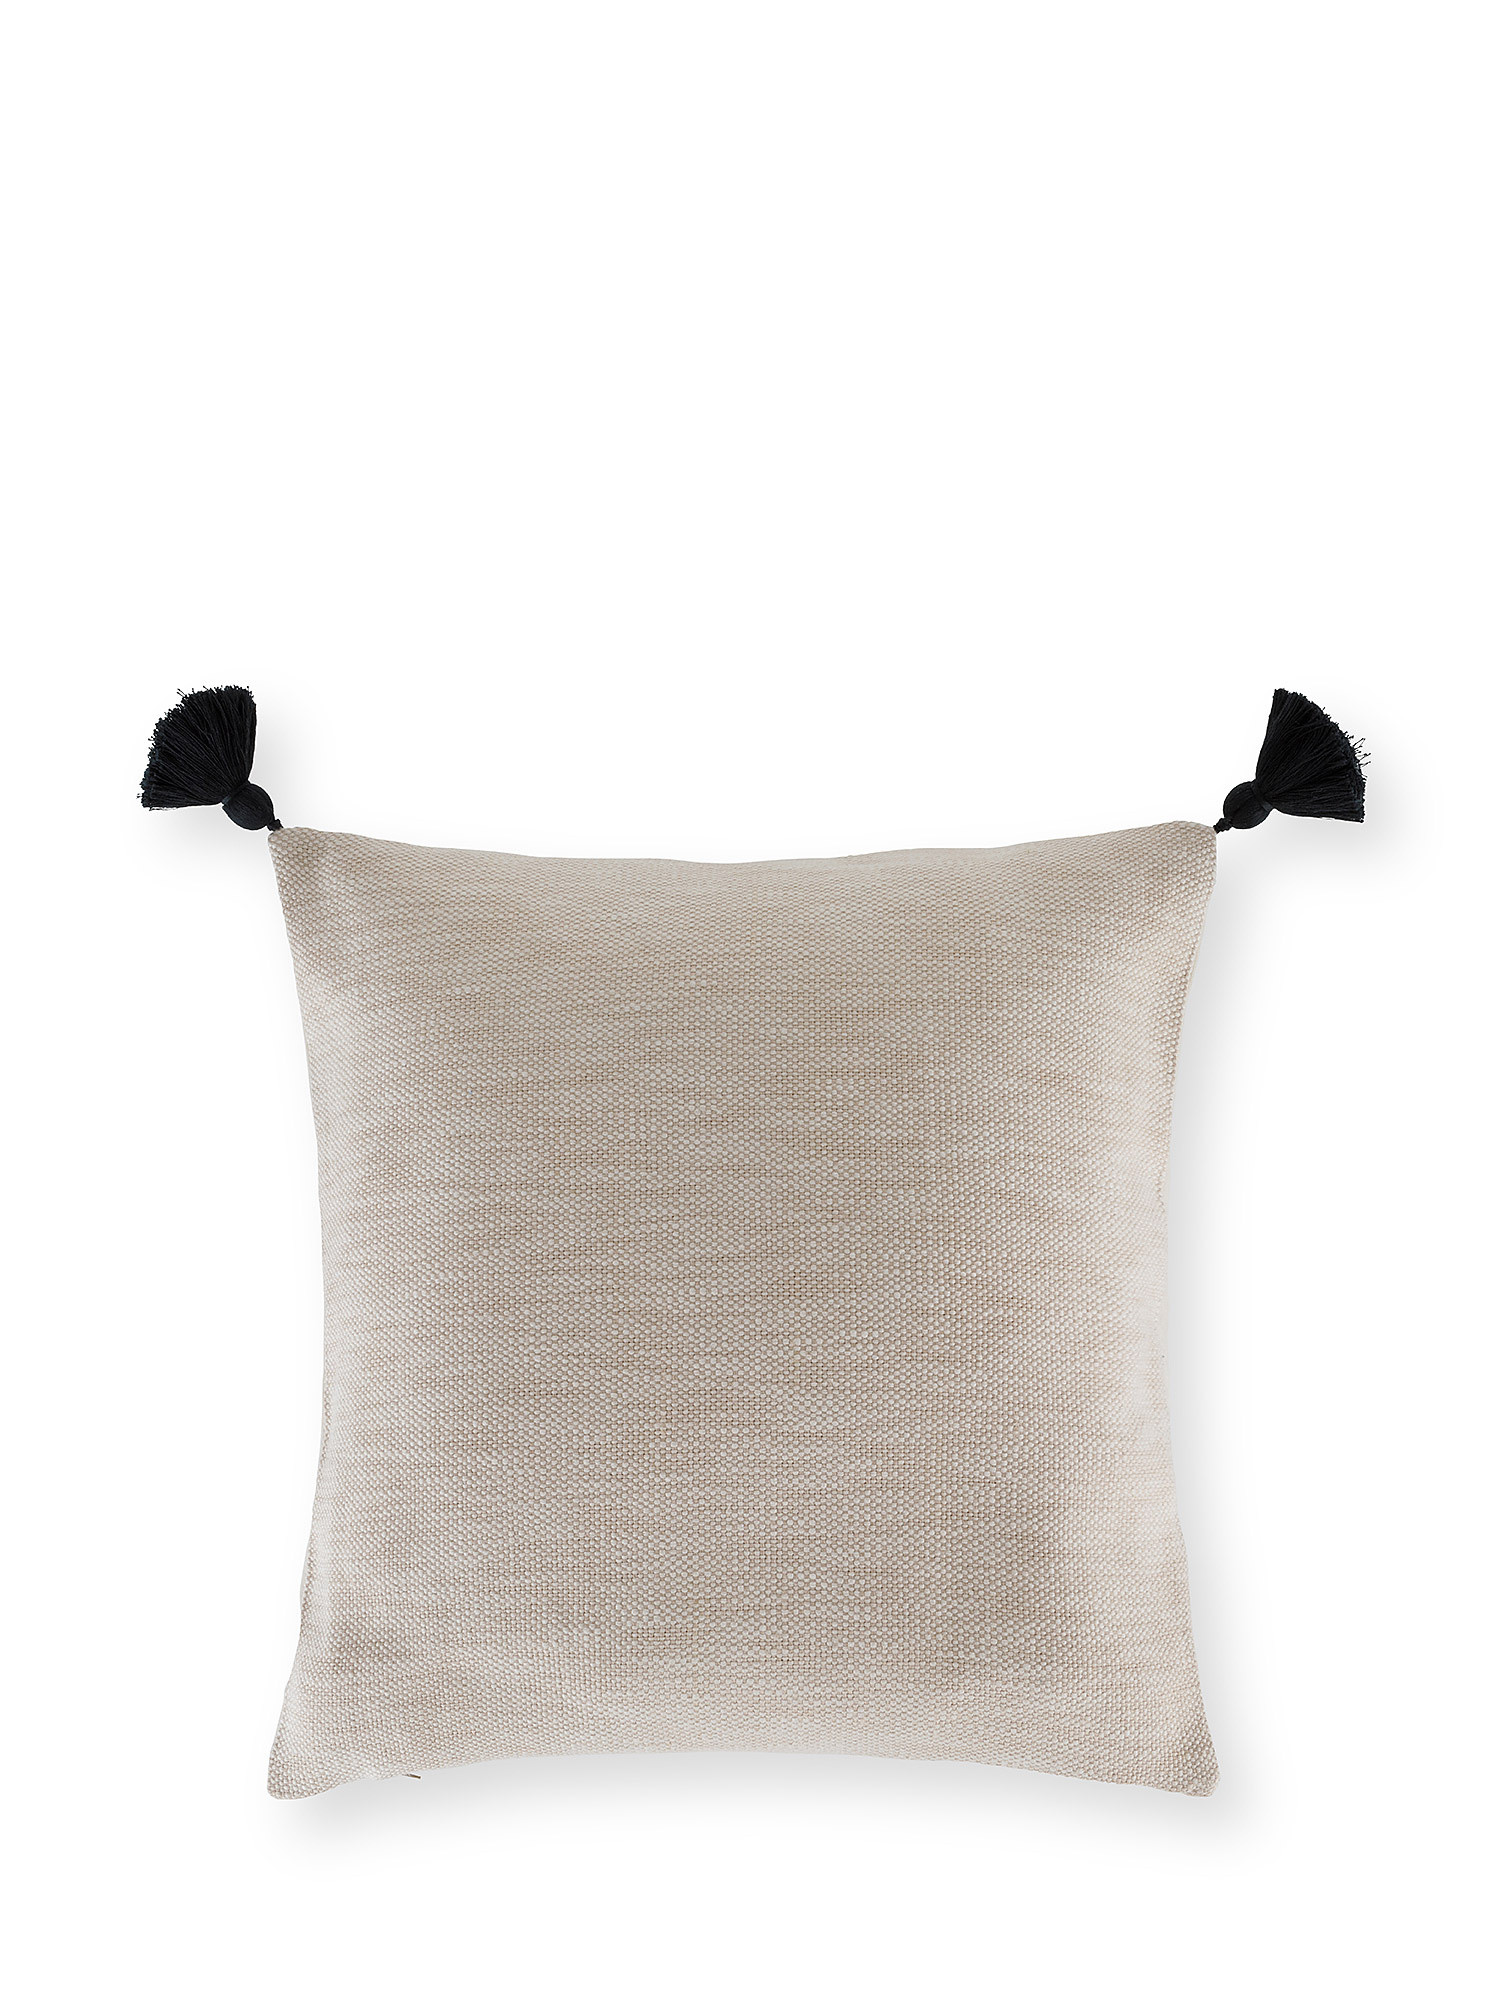 Жаккардовая подушка с кисточкой 50х50см Coincasa, бежевый подушка подушка 50х50см coincasa белый